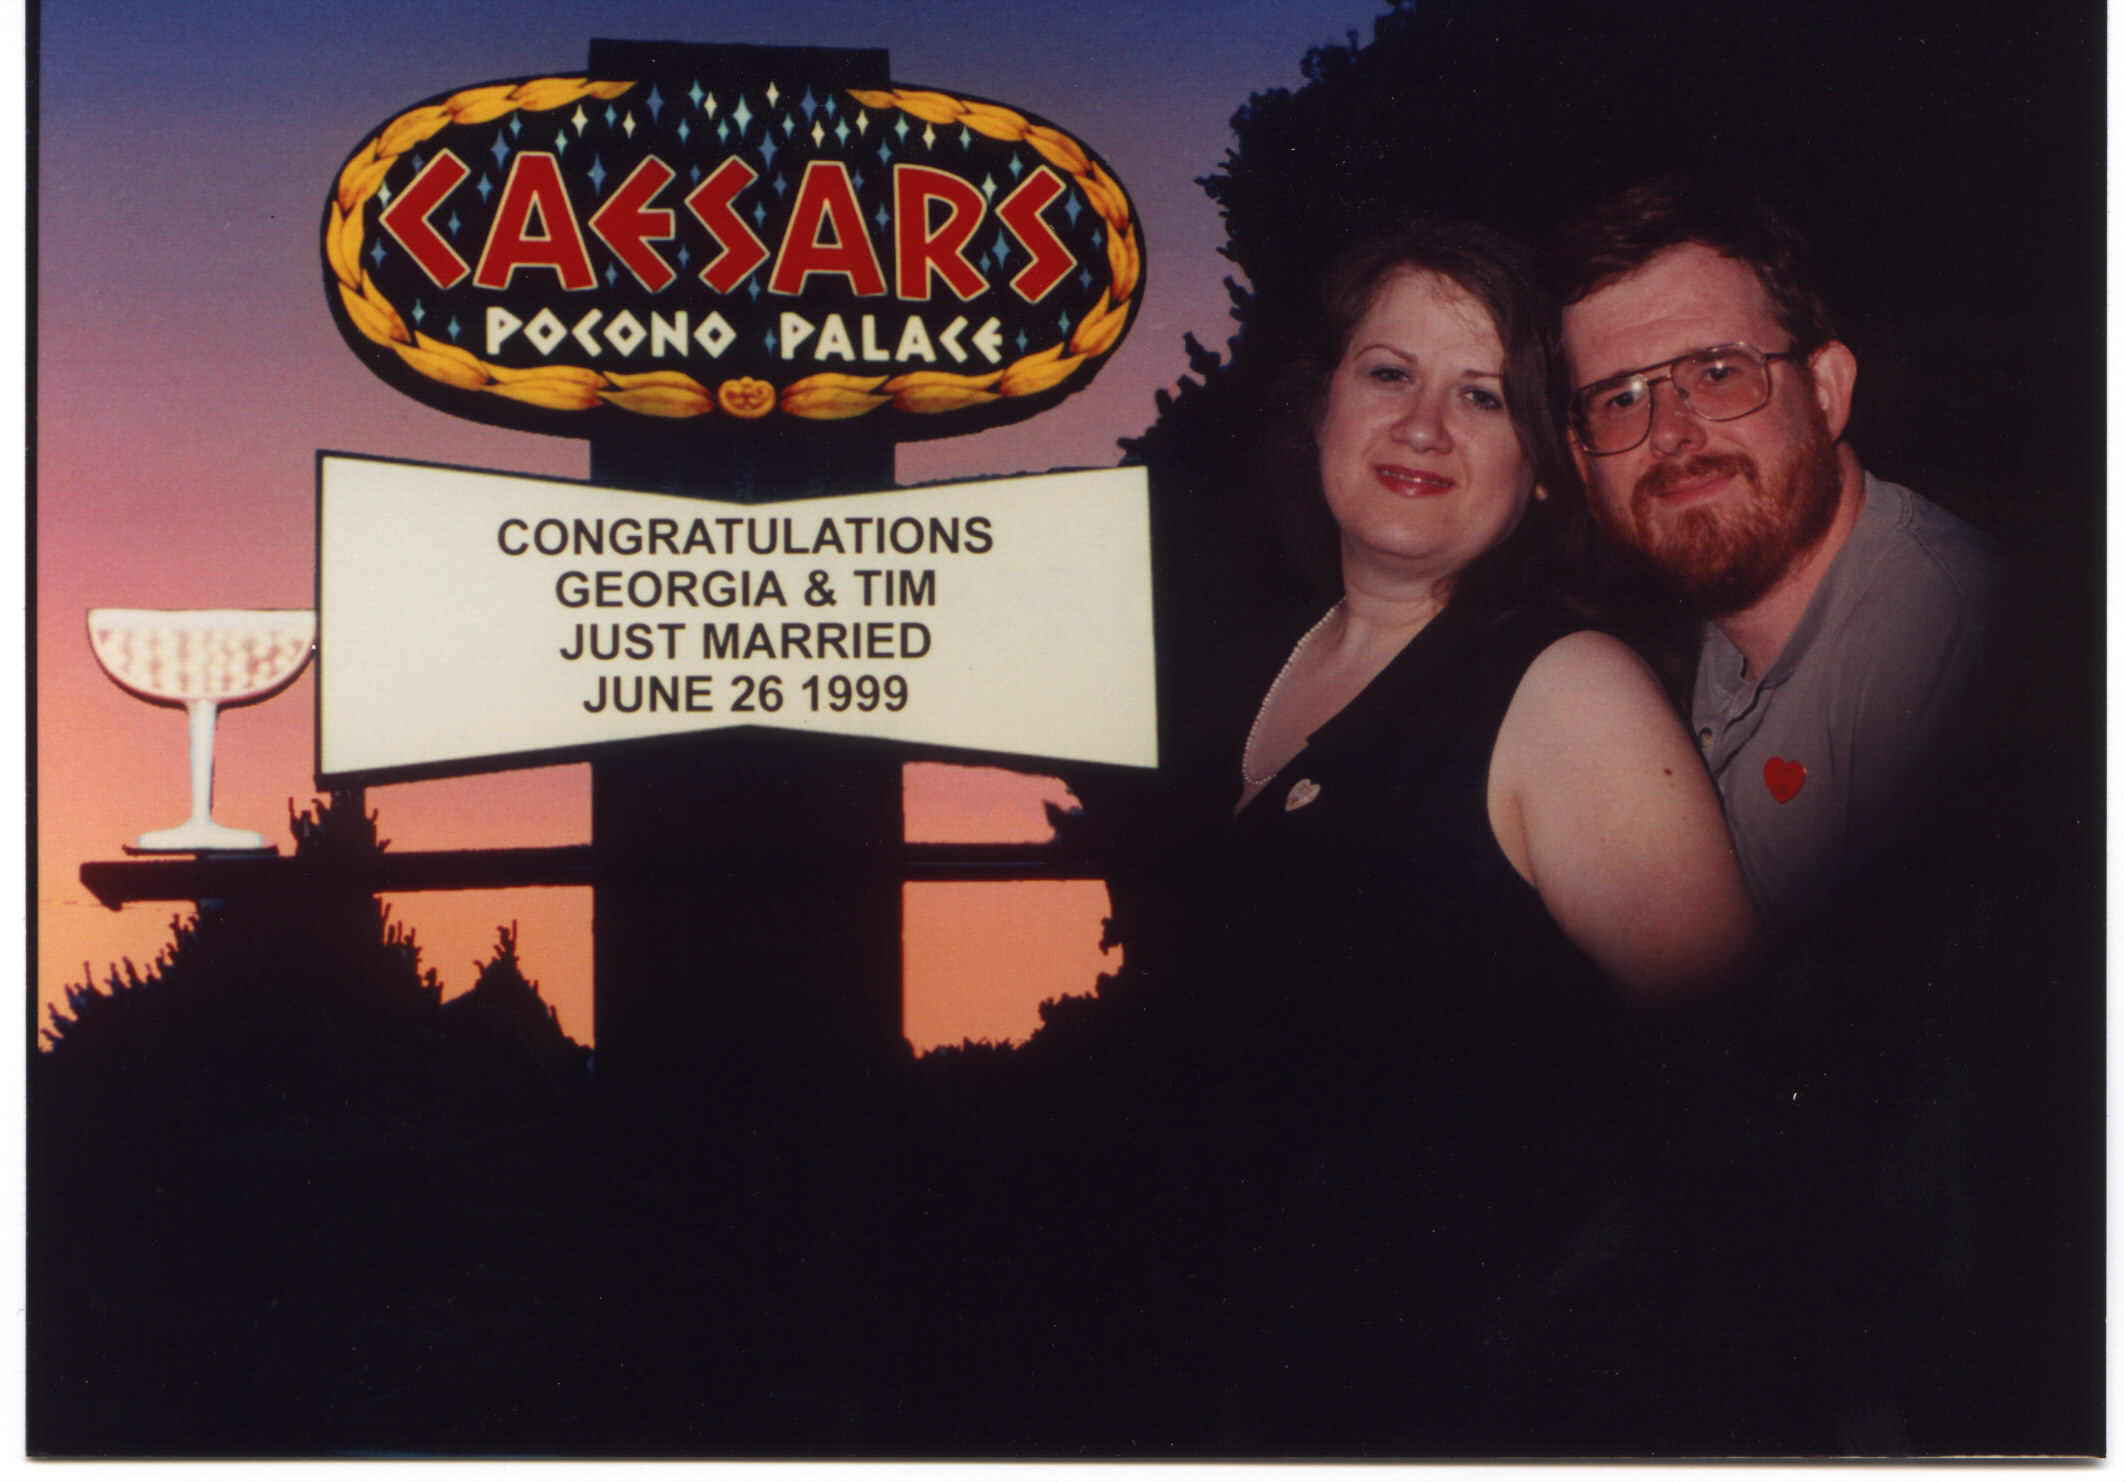 Honeymoon in the Poconos